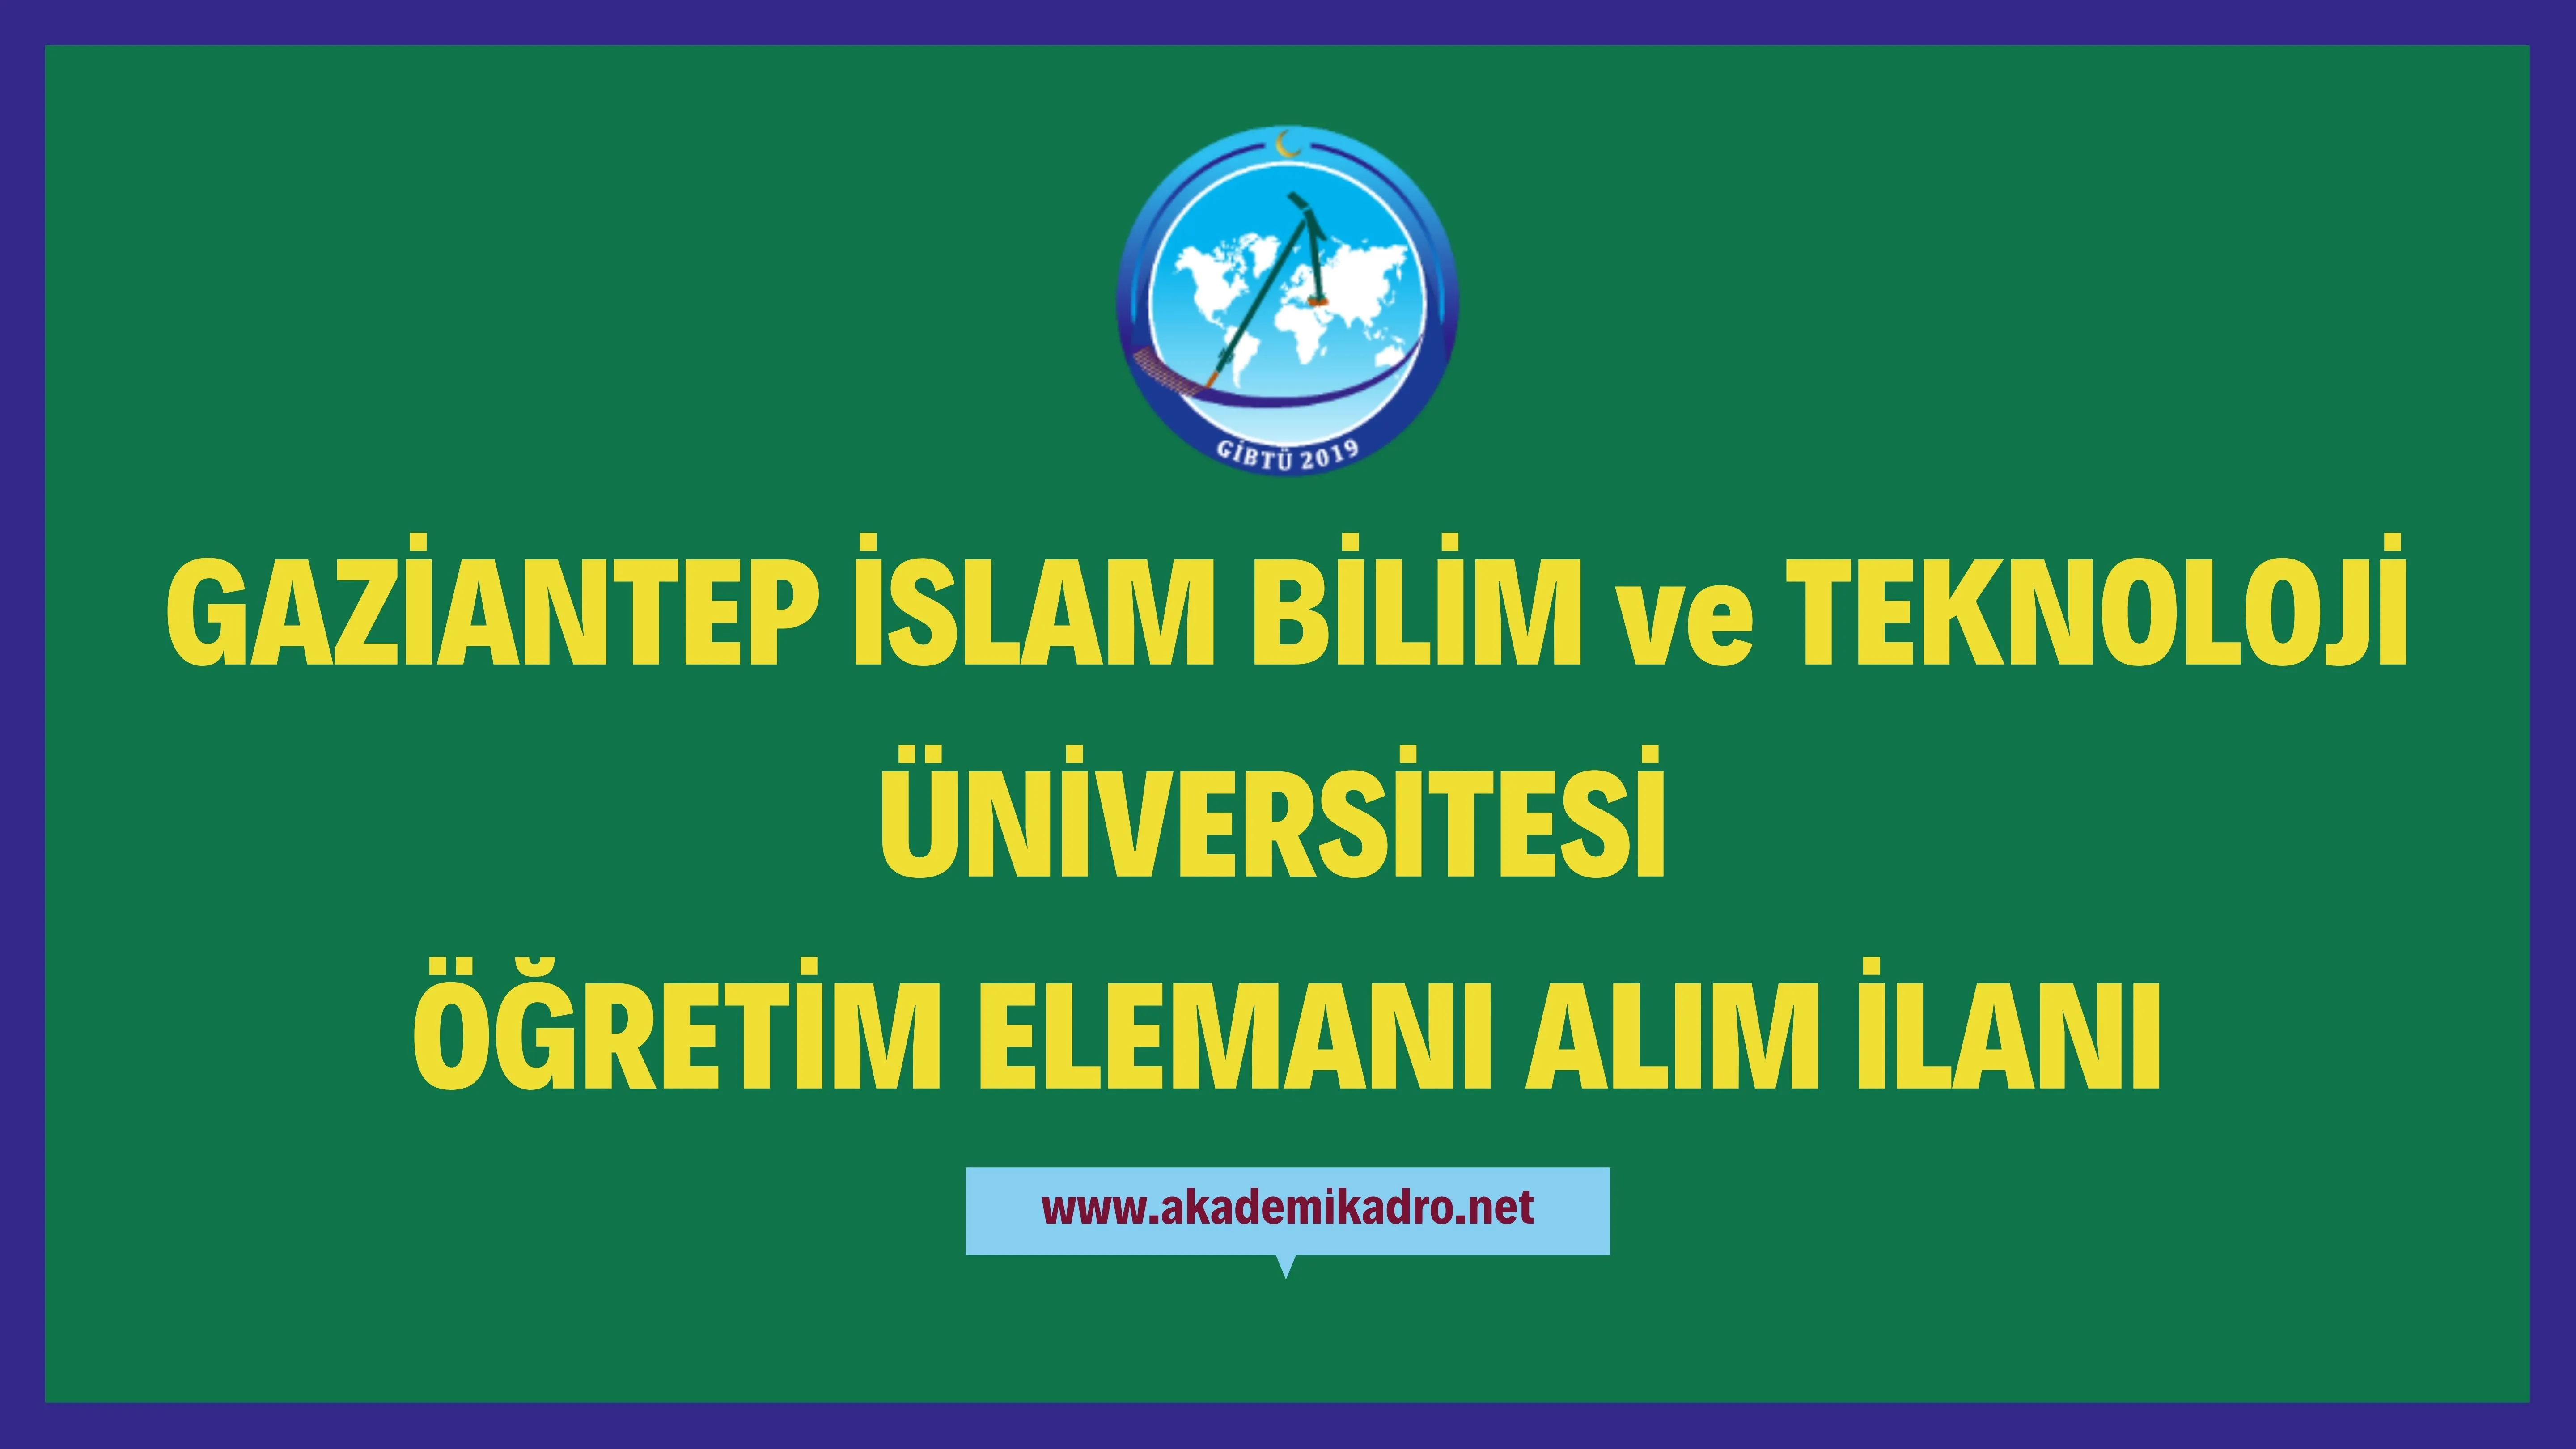 Gaziantep İslam Bilim ve Teknoloji Üniversitesi 3 Araştırma görevlisi-Öğretim görevlisi ve çeşitli branşlarda 5 Öğretim üyesi alacak.